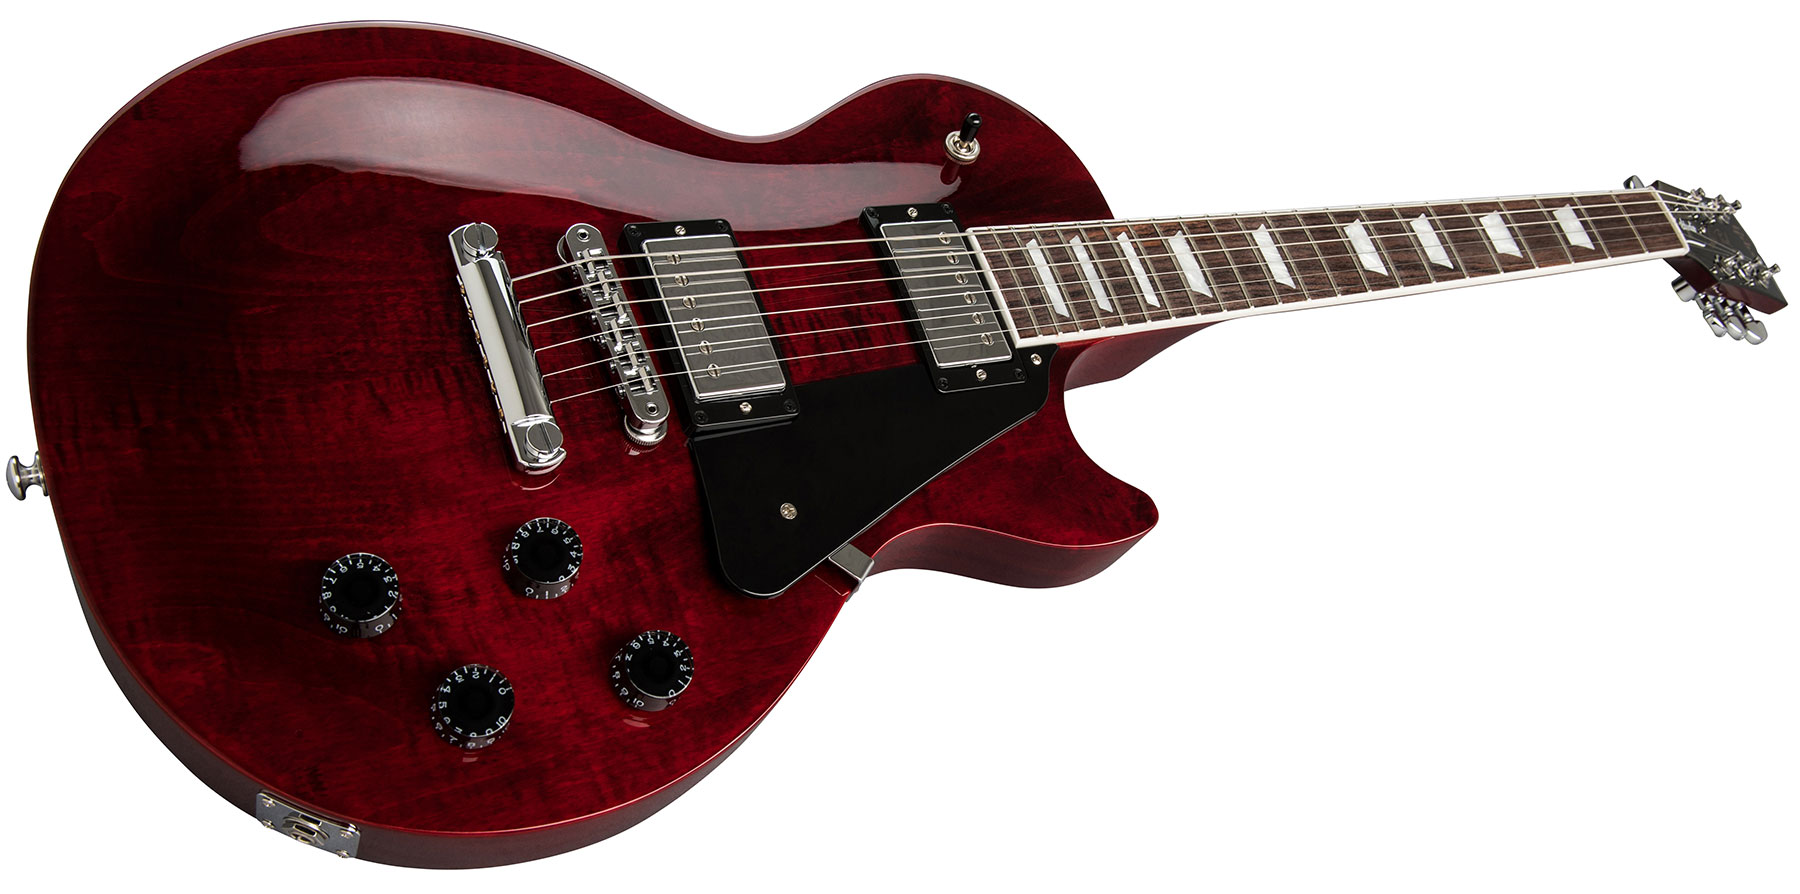 Gibson Les Paul Studio 2019 Hh Ht Rw - Wine Red - Enkel gesneden elektrische gitaar - Variation 1